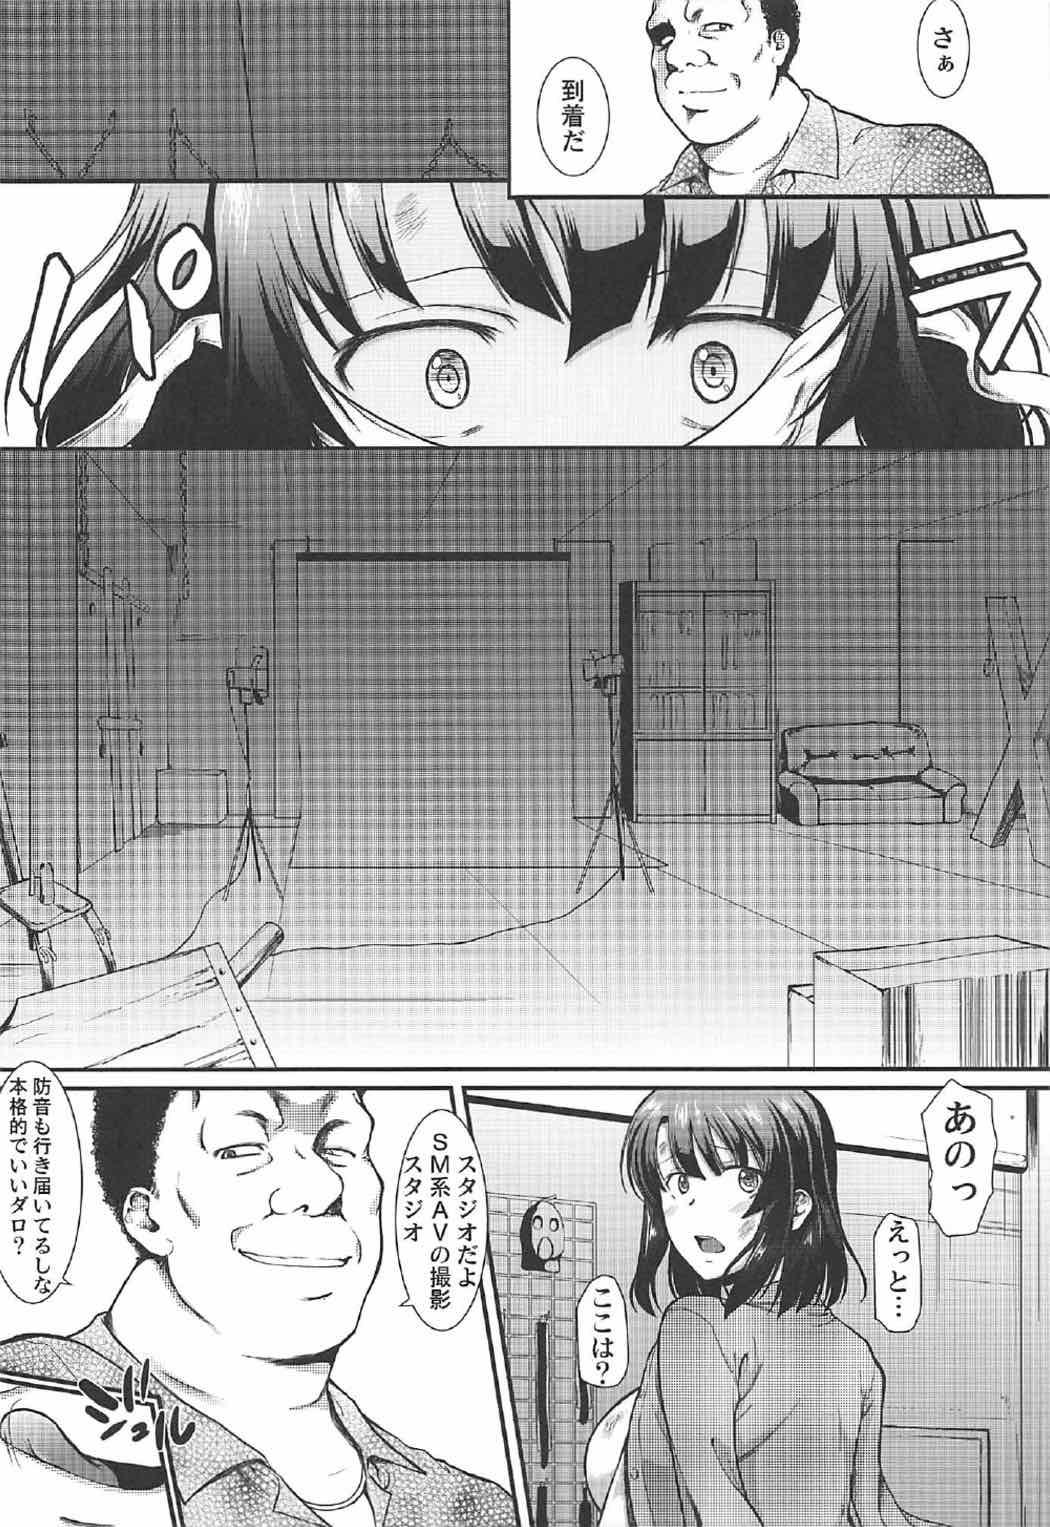 Alone Kimi wa Boku no Taiyou da 2 - Saenai heroine no sodatekata Sexo - Page 13